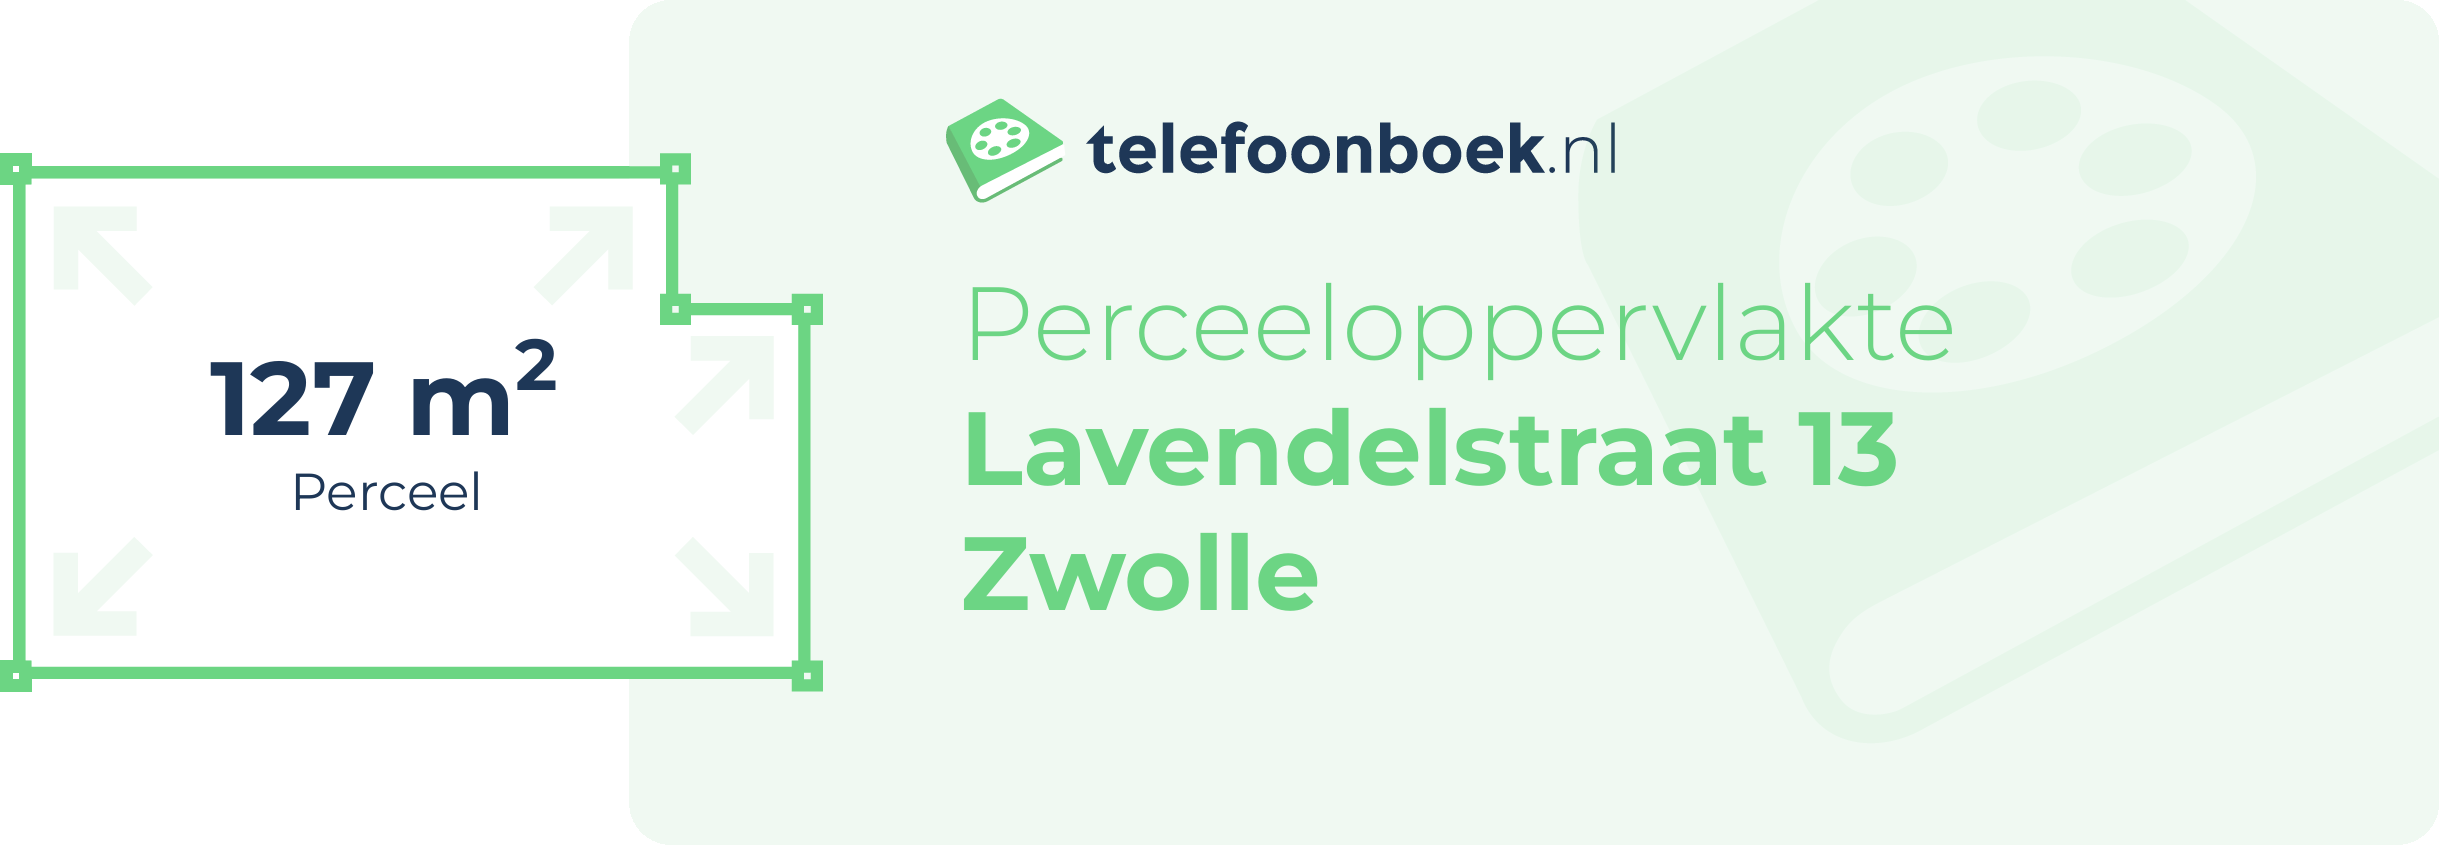 Perceeloppervlakte Lavendelstraat 13 Zwolle